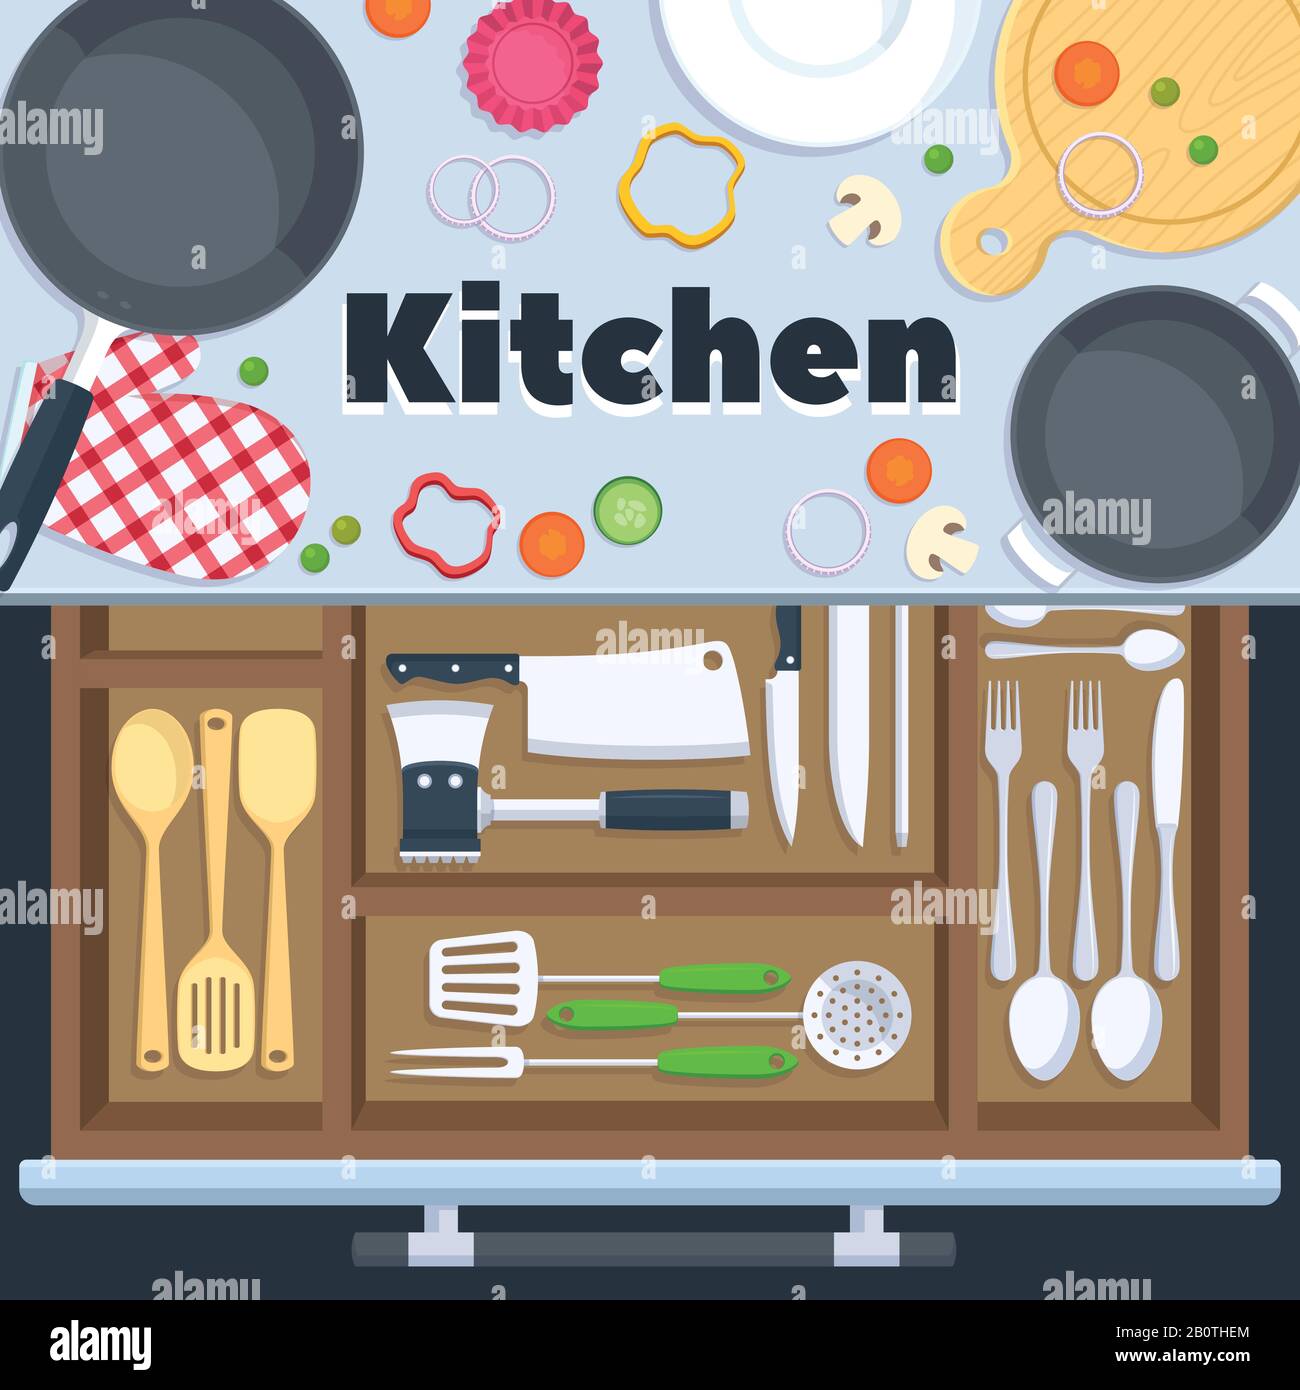 Chào mừng đến với thiết kế nhà bếp của chúng tôi. Hình nền này sẽ cho bạn một cái nhìn tổng quan về thiết bị nấu ăn của nhà hàng, giúp bạn thấy rõ các yếu tố thiết kế của một không gian bếp hiện đại.